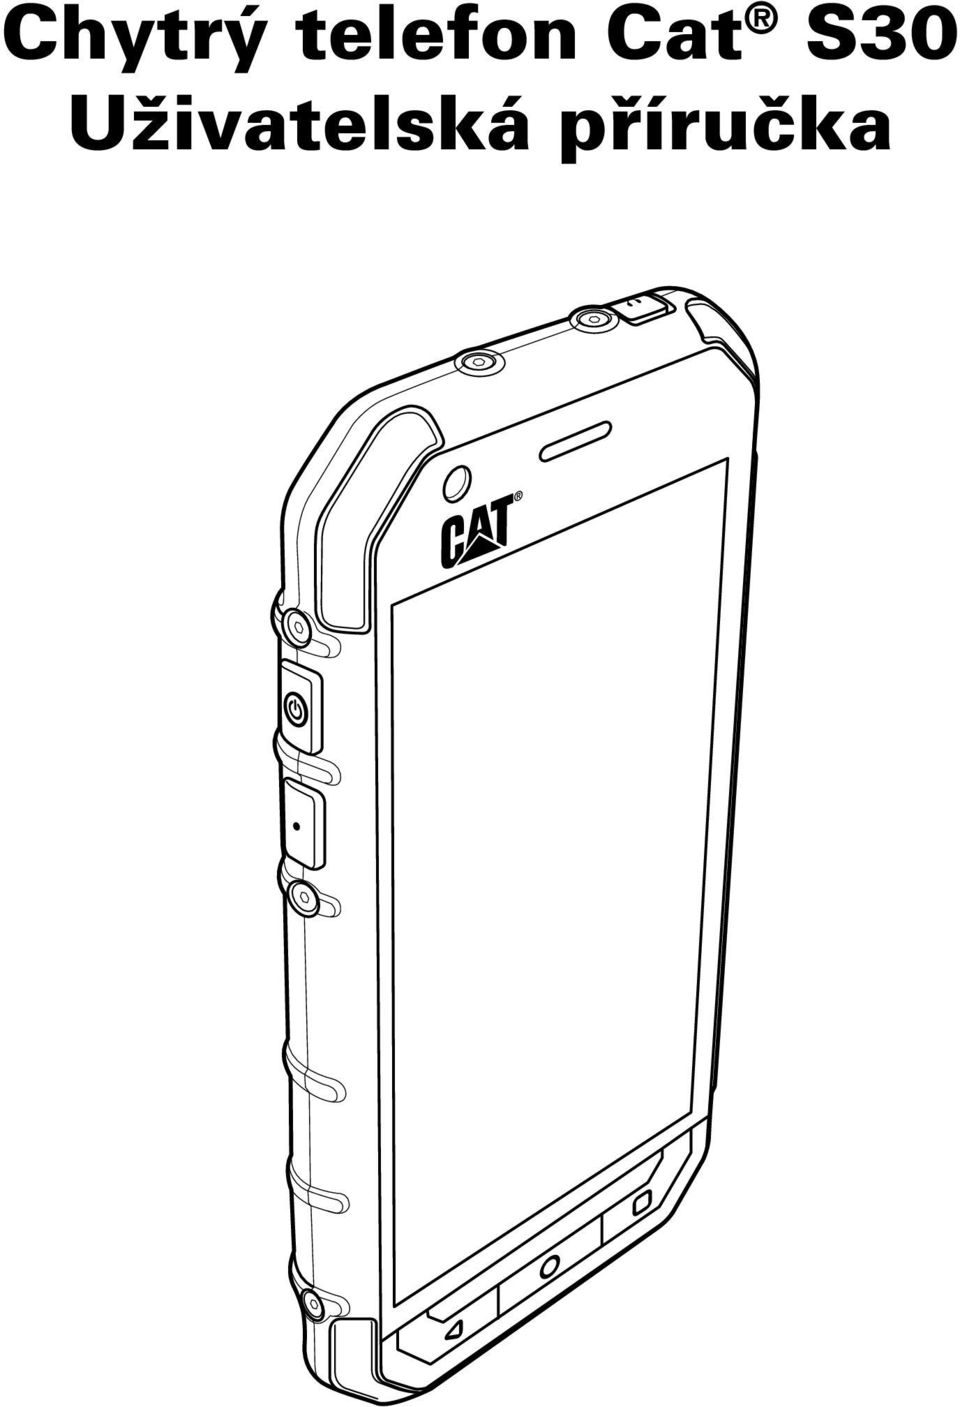 Chytrý telefon Cat S30 Uživatelská příručka - PDF Free Download